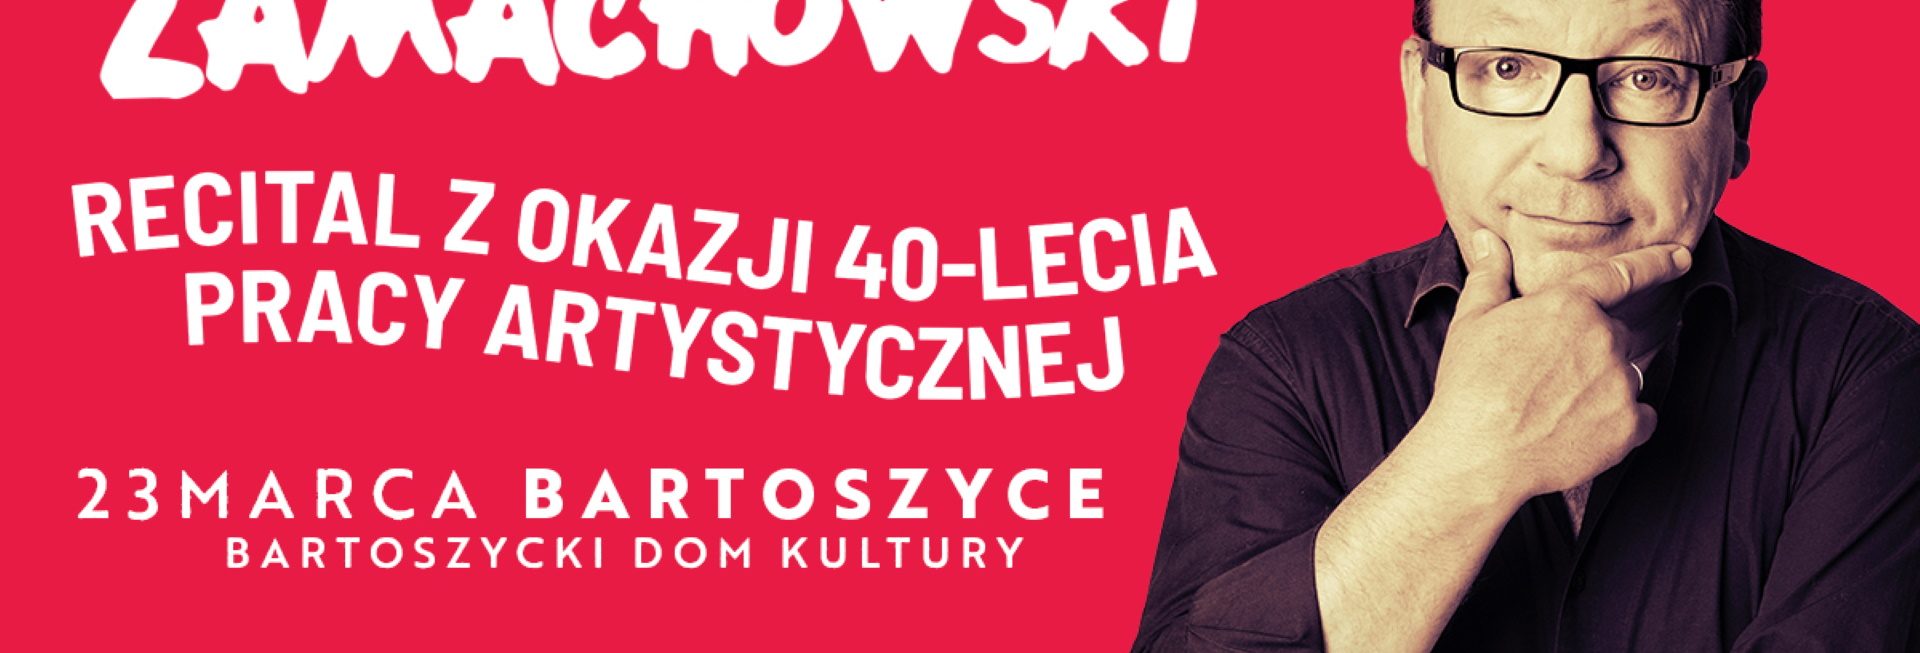 Plakat zapraszający w sobotę 23 marca 2024 r. do Bartoszyc na recital z okazji 40-lecia pracy artystycznej Zbigniewa Zamachowskiego Bartoszyce 2024.